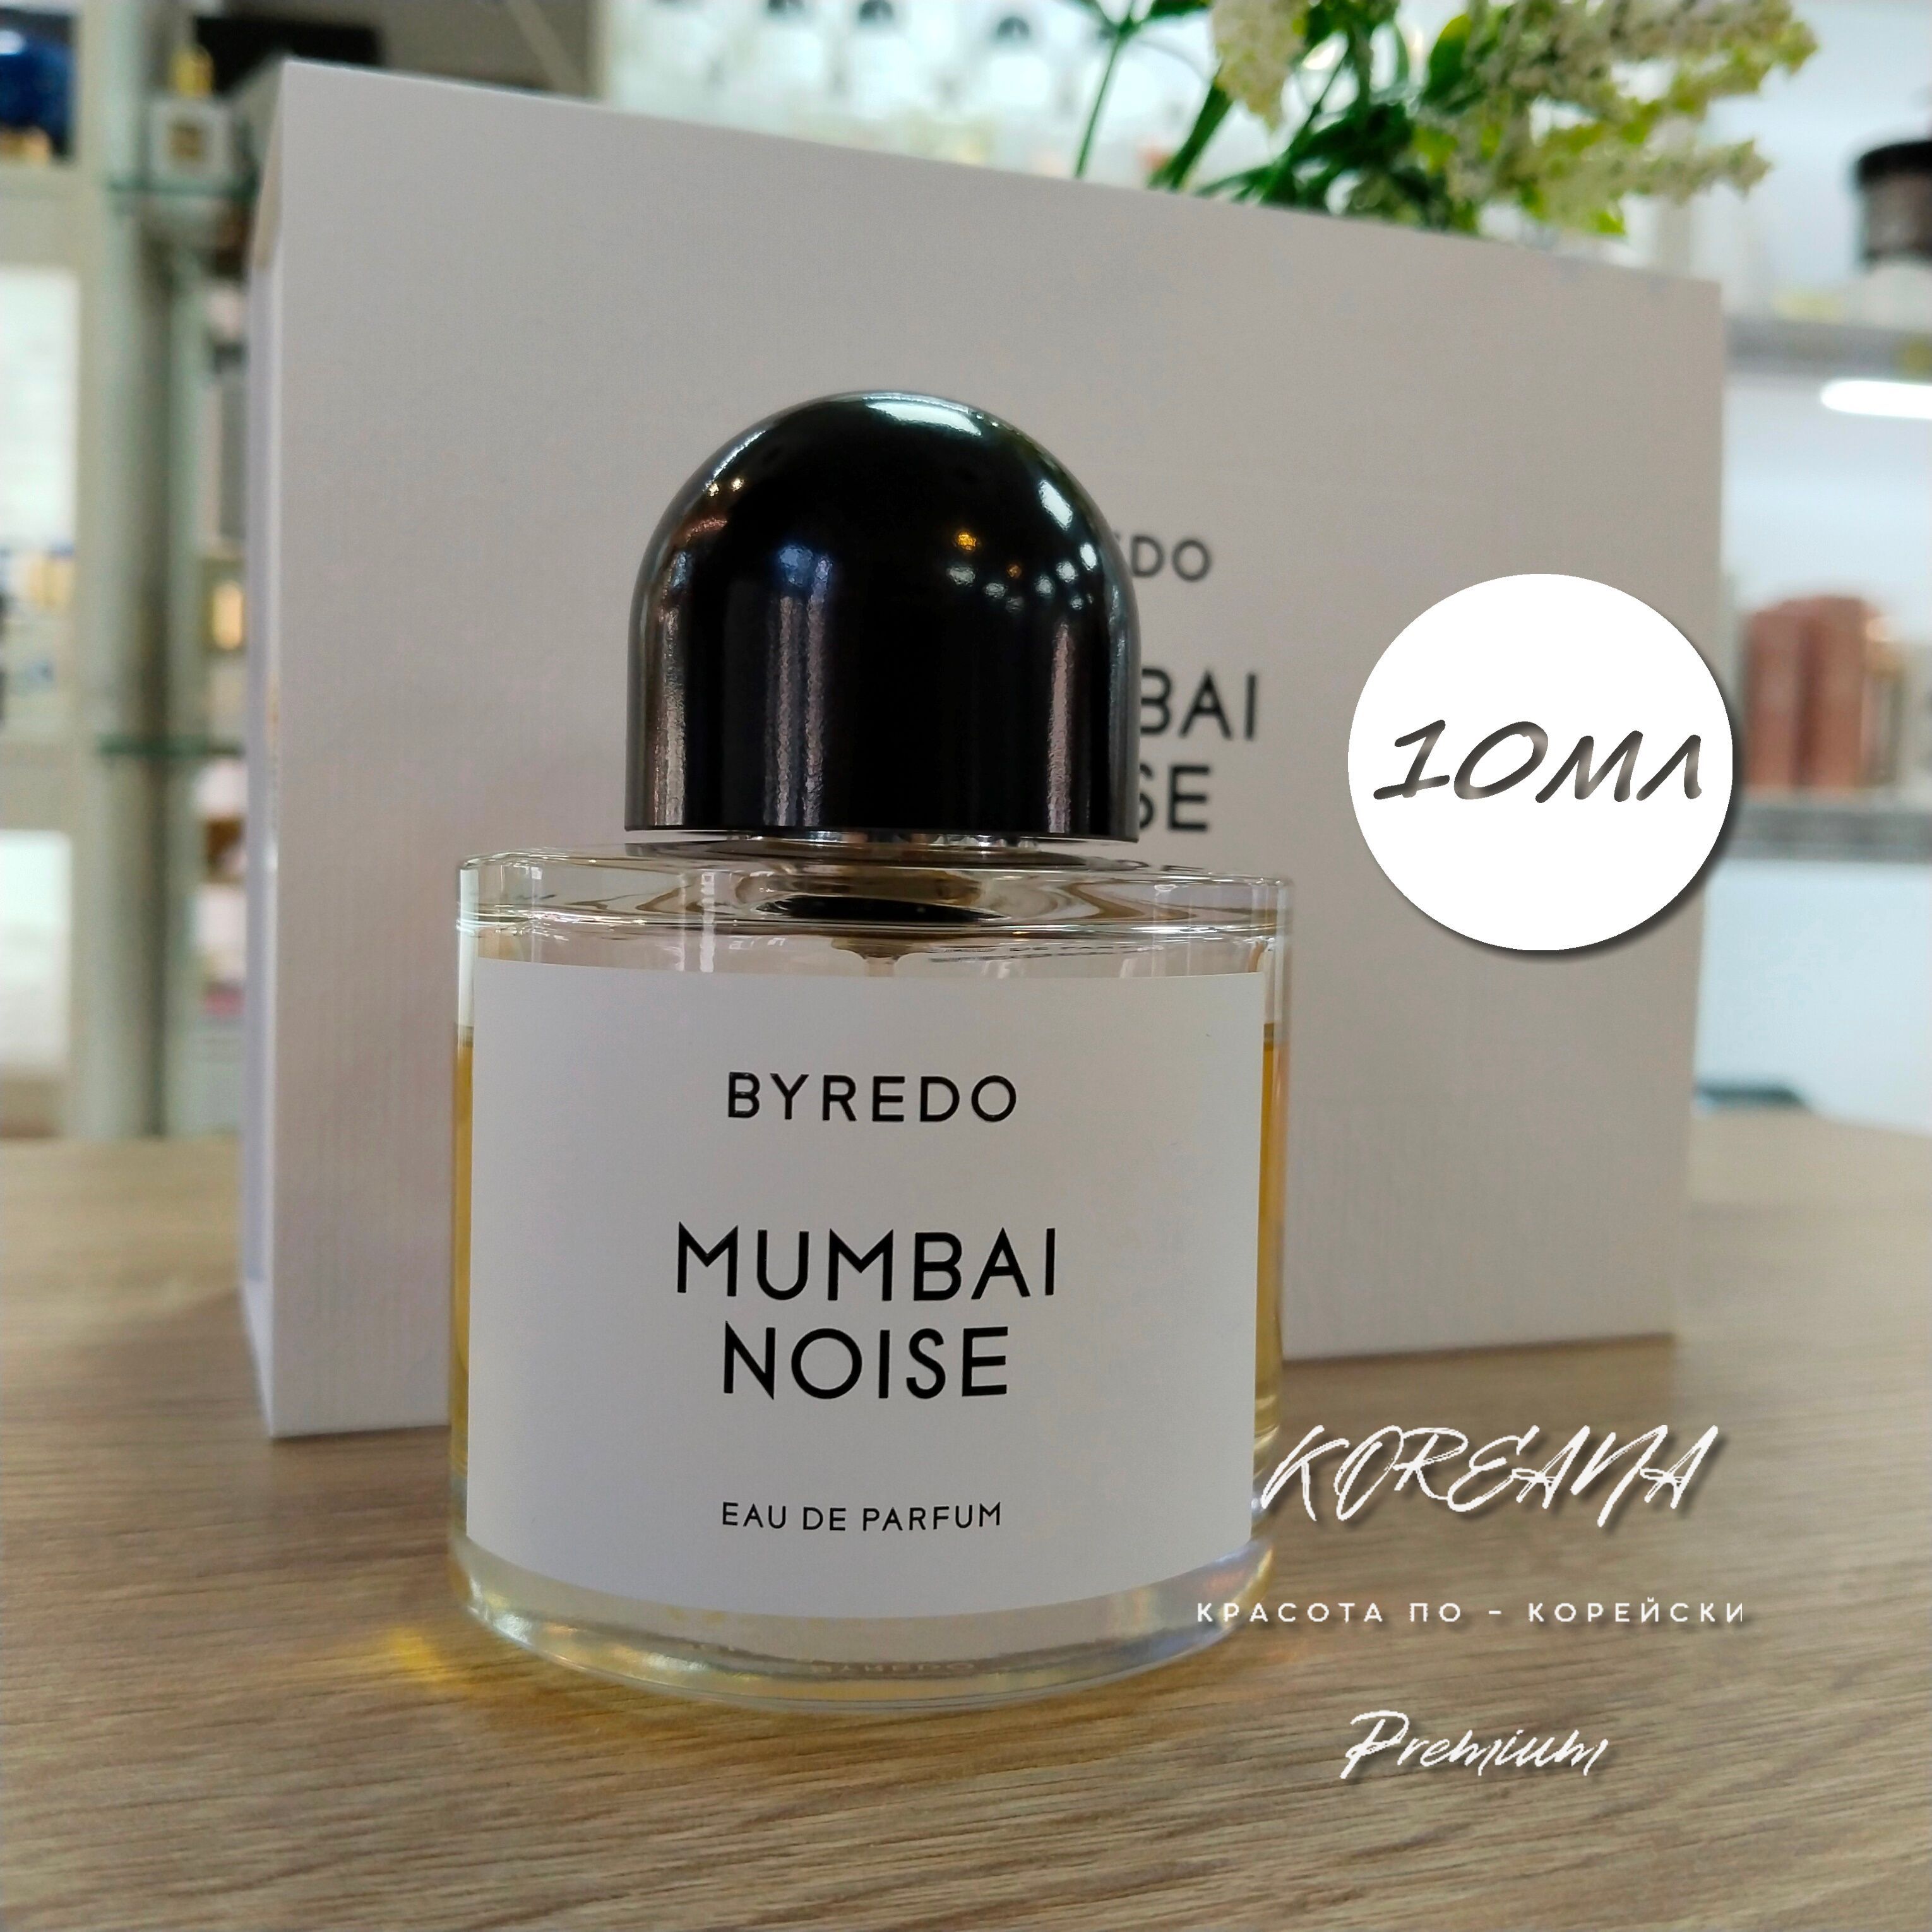 Byredo mumbai noise. Mumbai Noise Byredo описание аромата фото. Mumbai Noise Byredo описание аромата фото что входит в состав данного аромата.